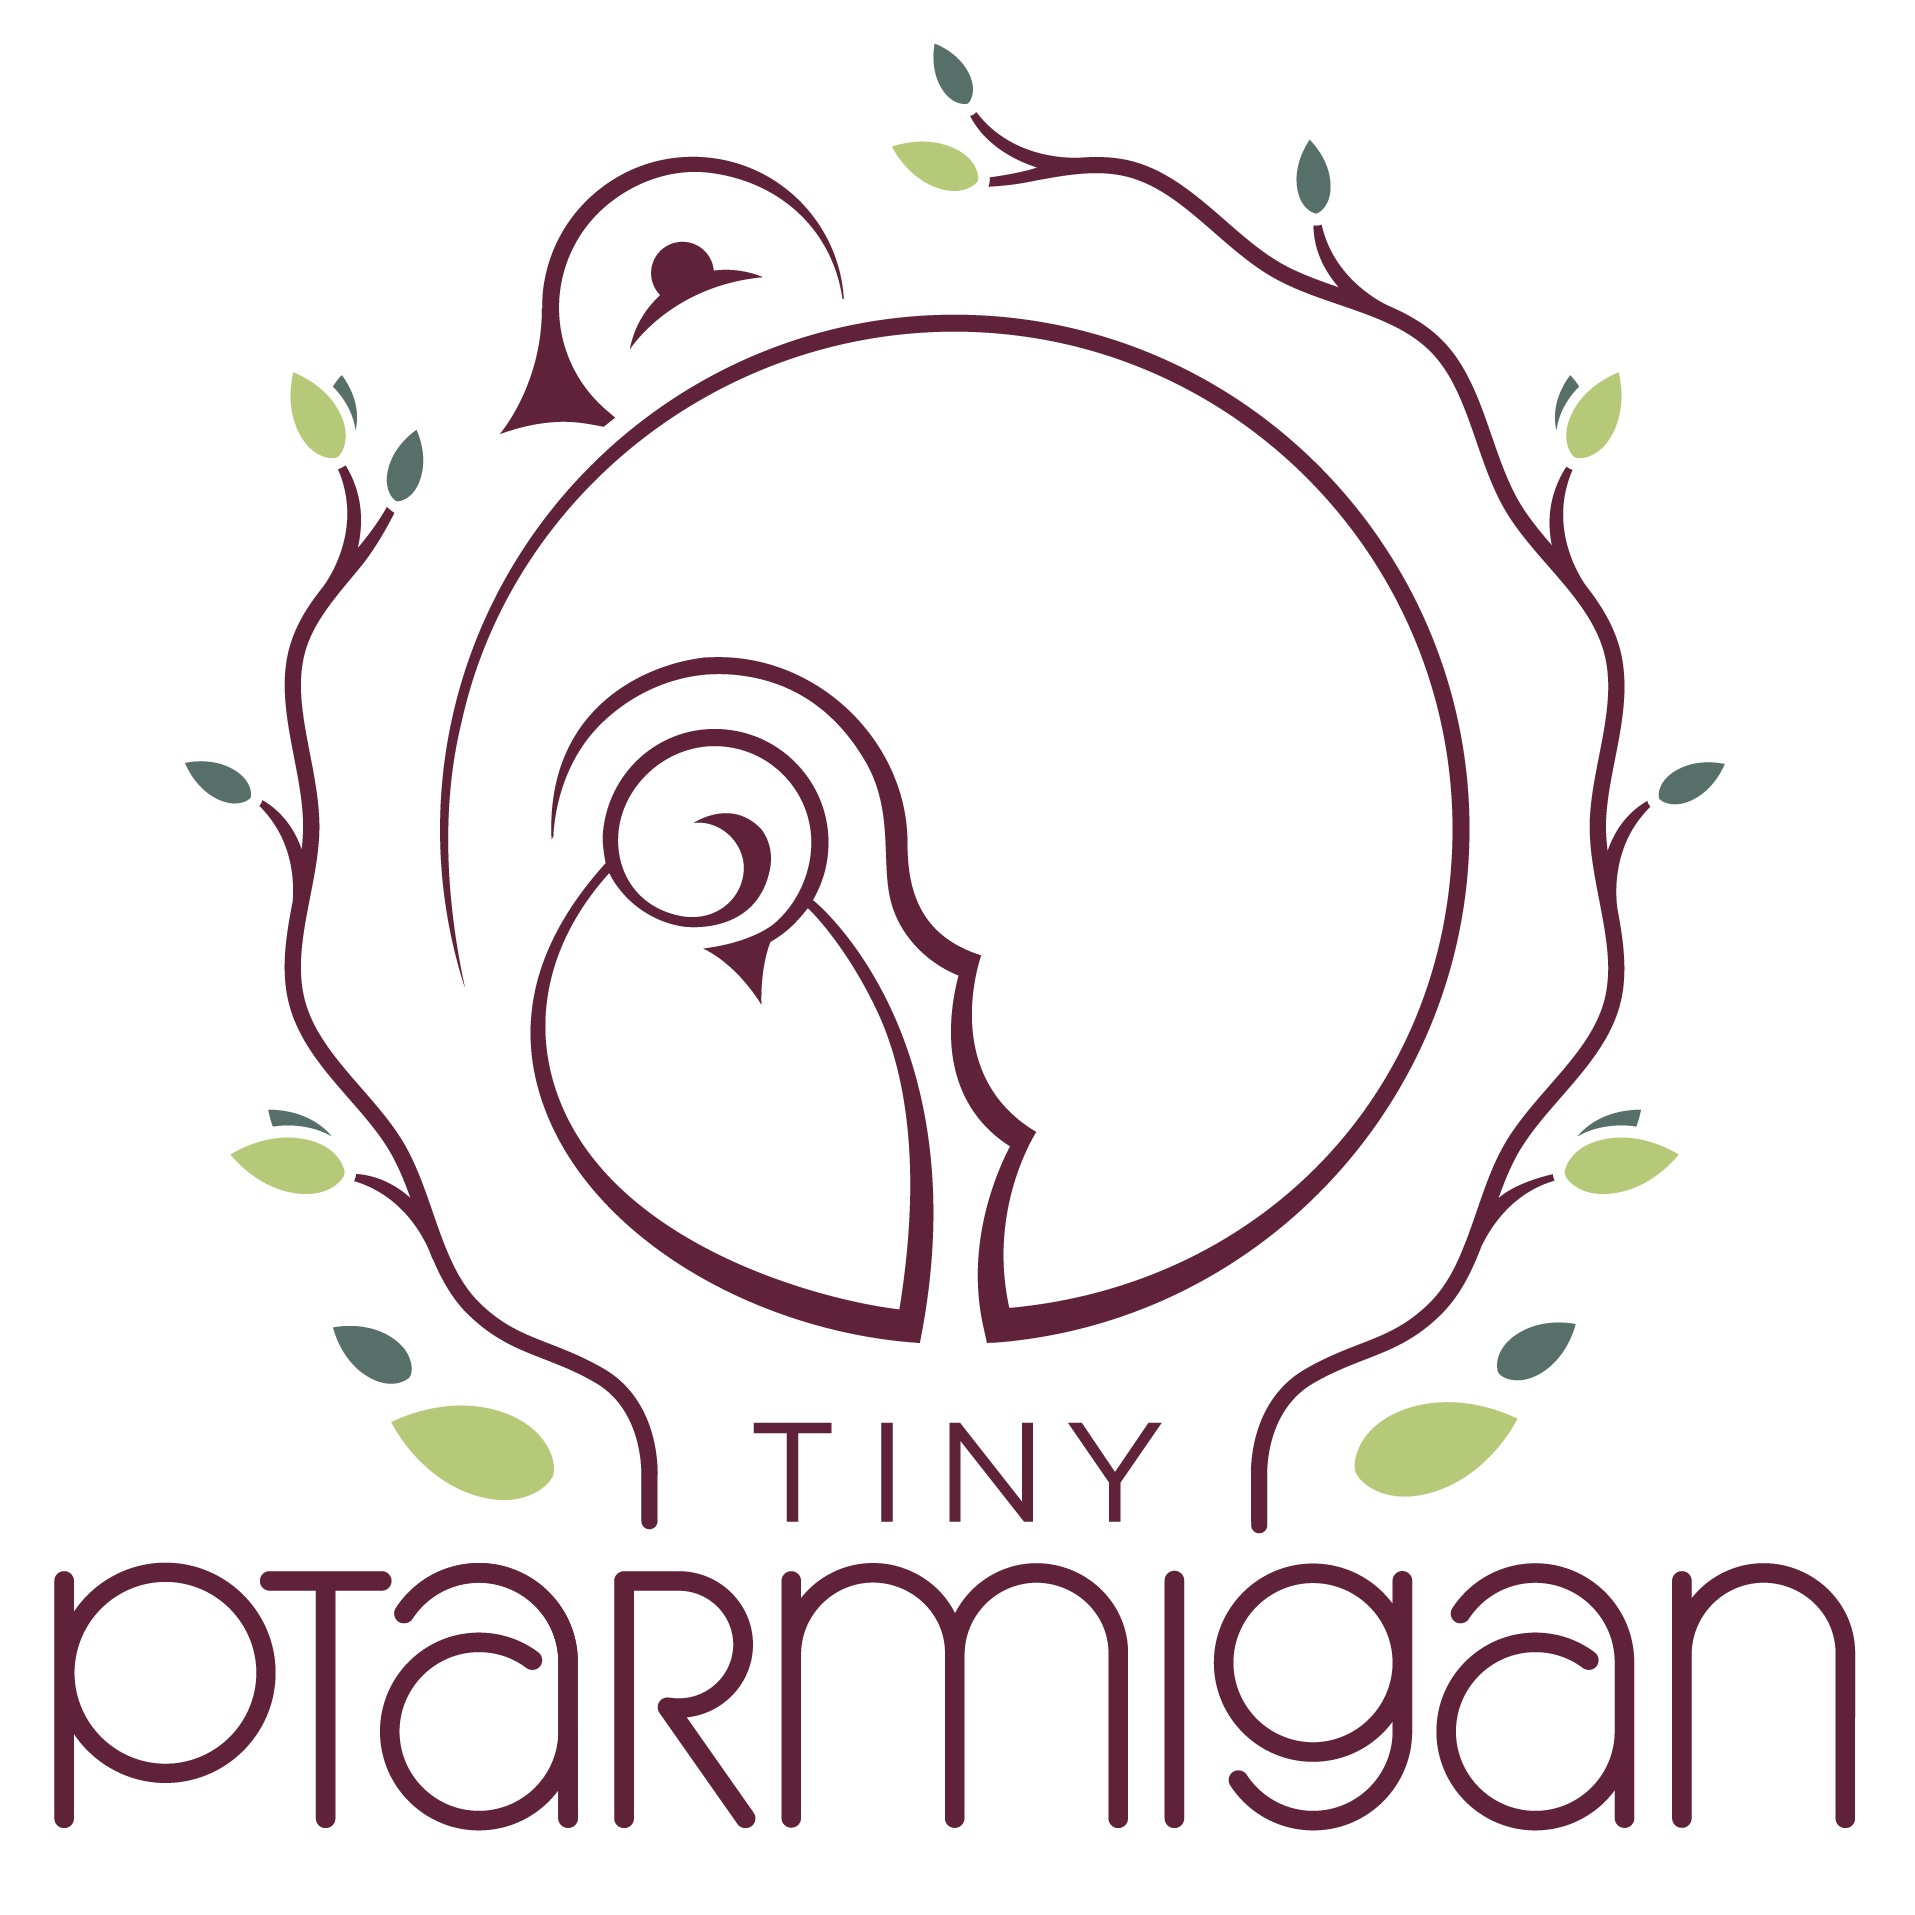 Tiny Ptarmigan-versions-RGB-01.jpg